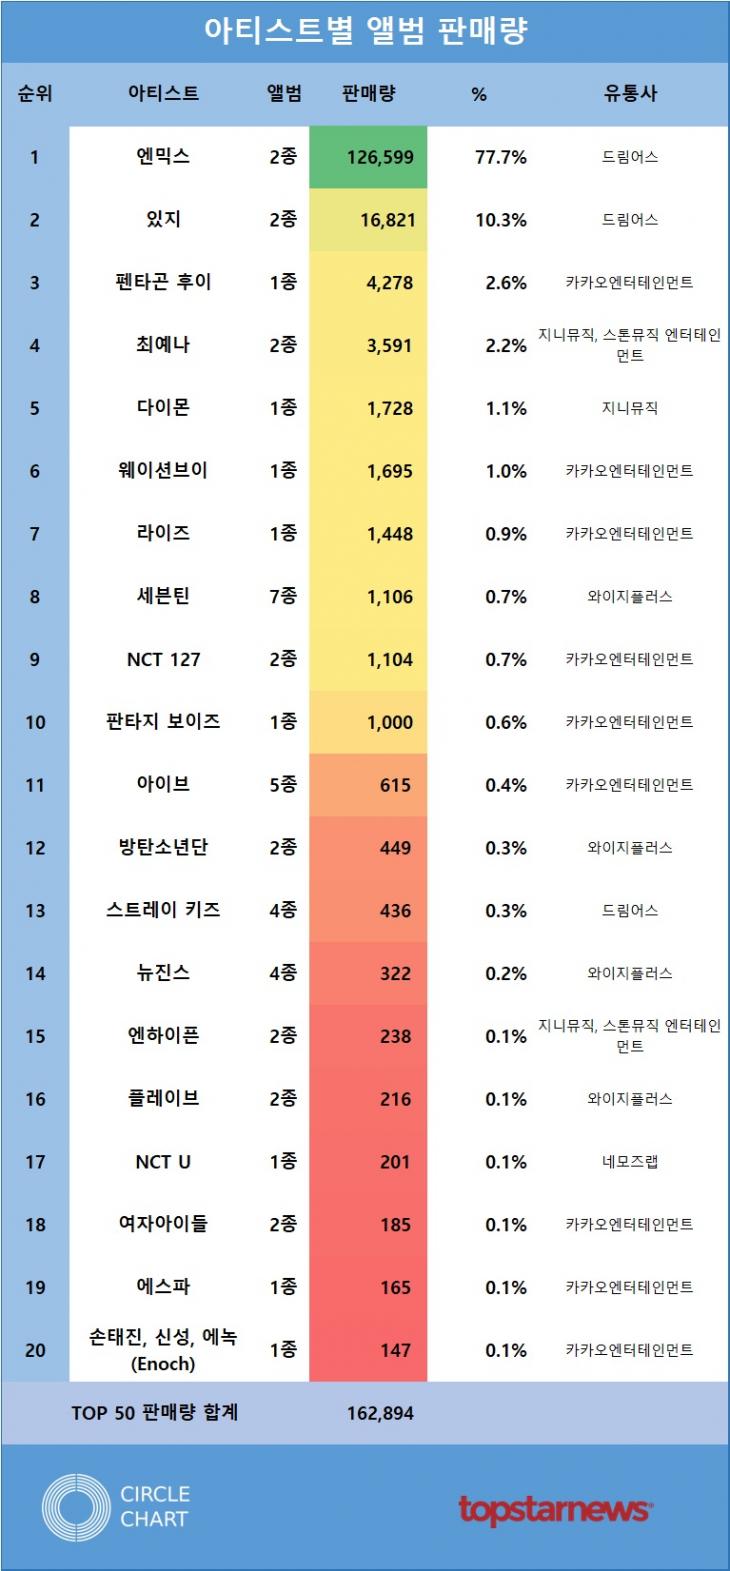 [표2] 아티스트별 앨범 판매량 TOP10